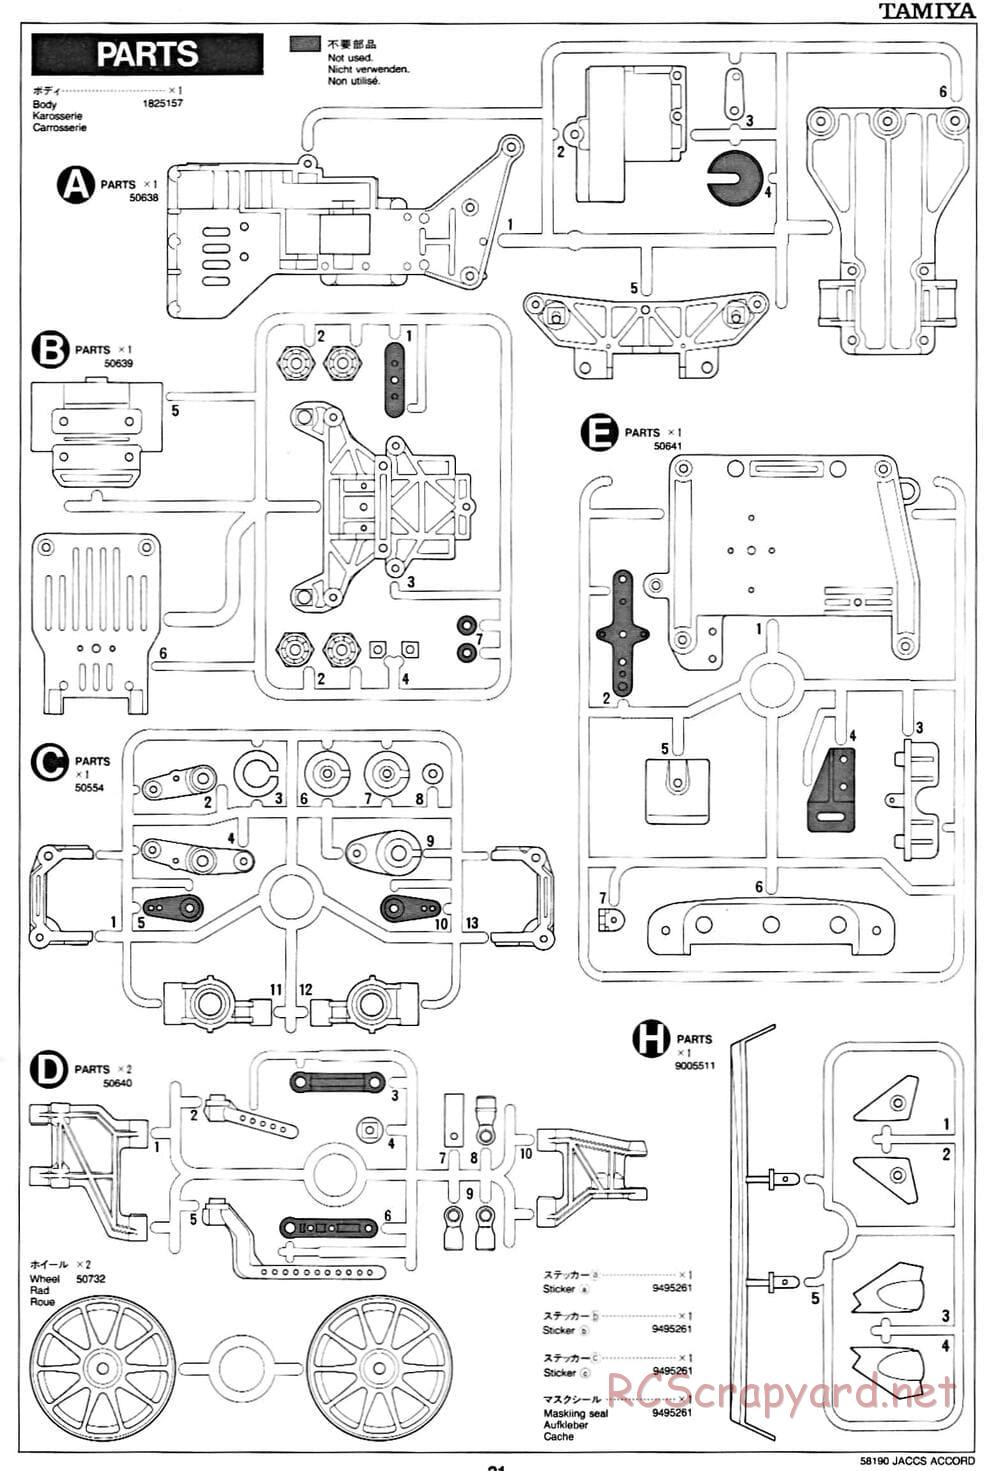 Tamiya - JACCS Honda Accord - FF-01 Chassis - Manual - Page 21